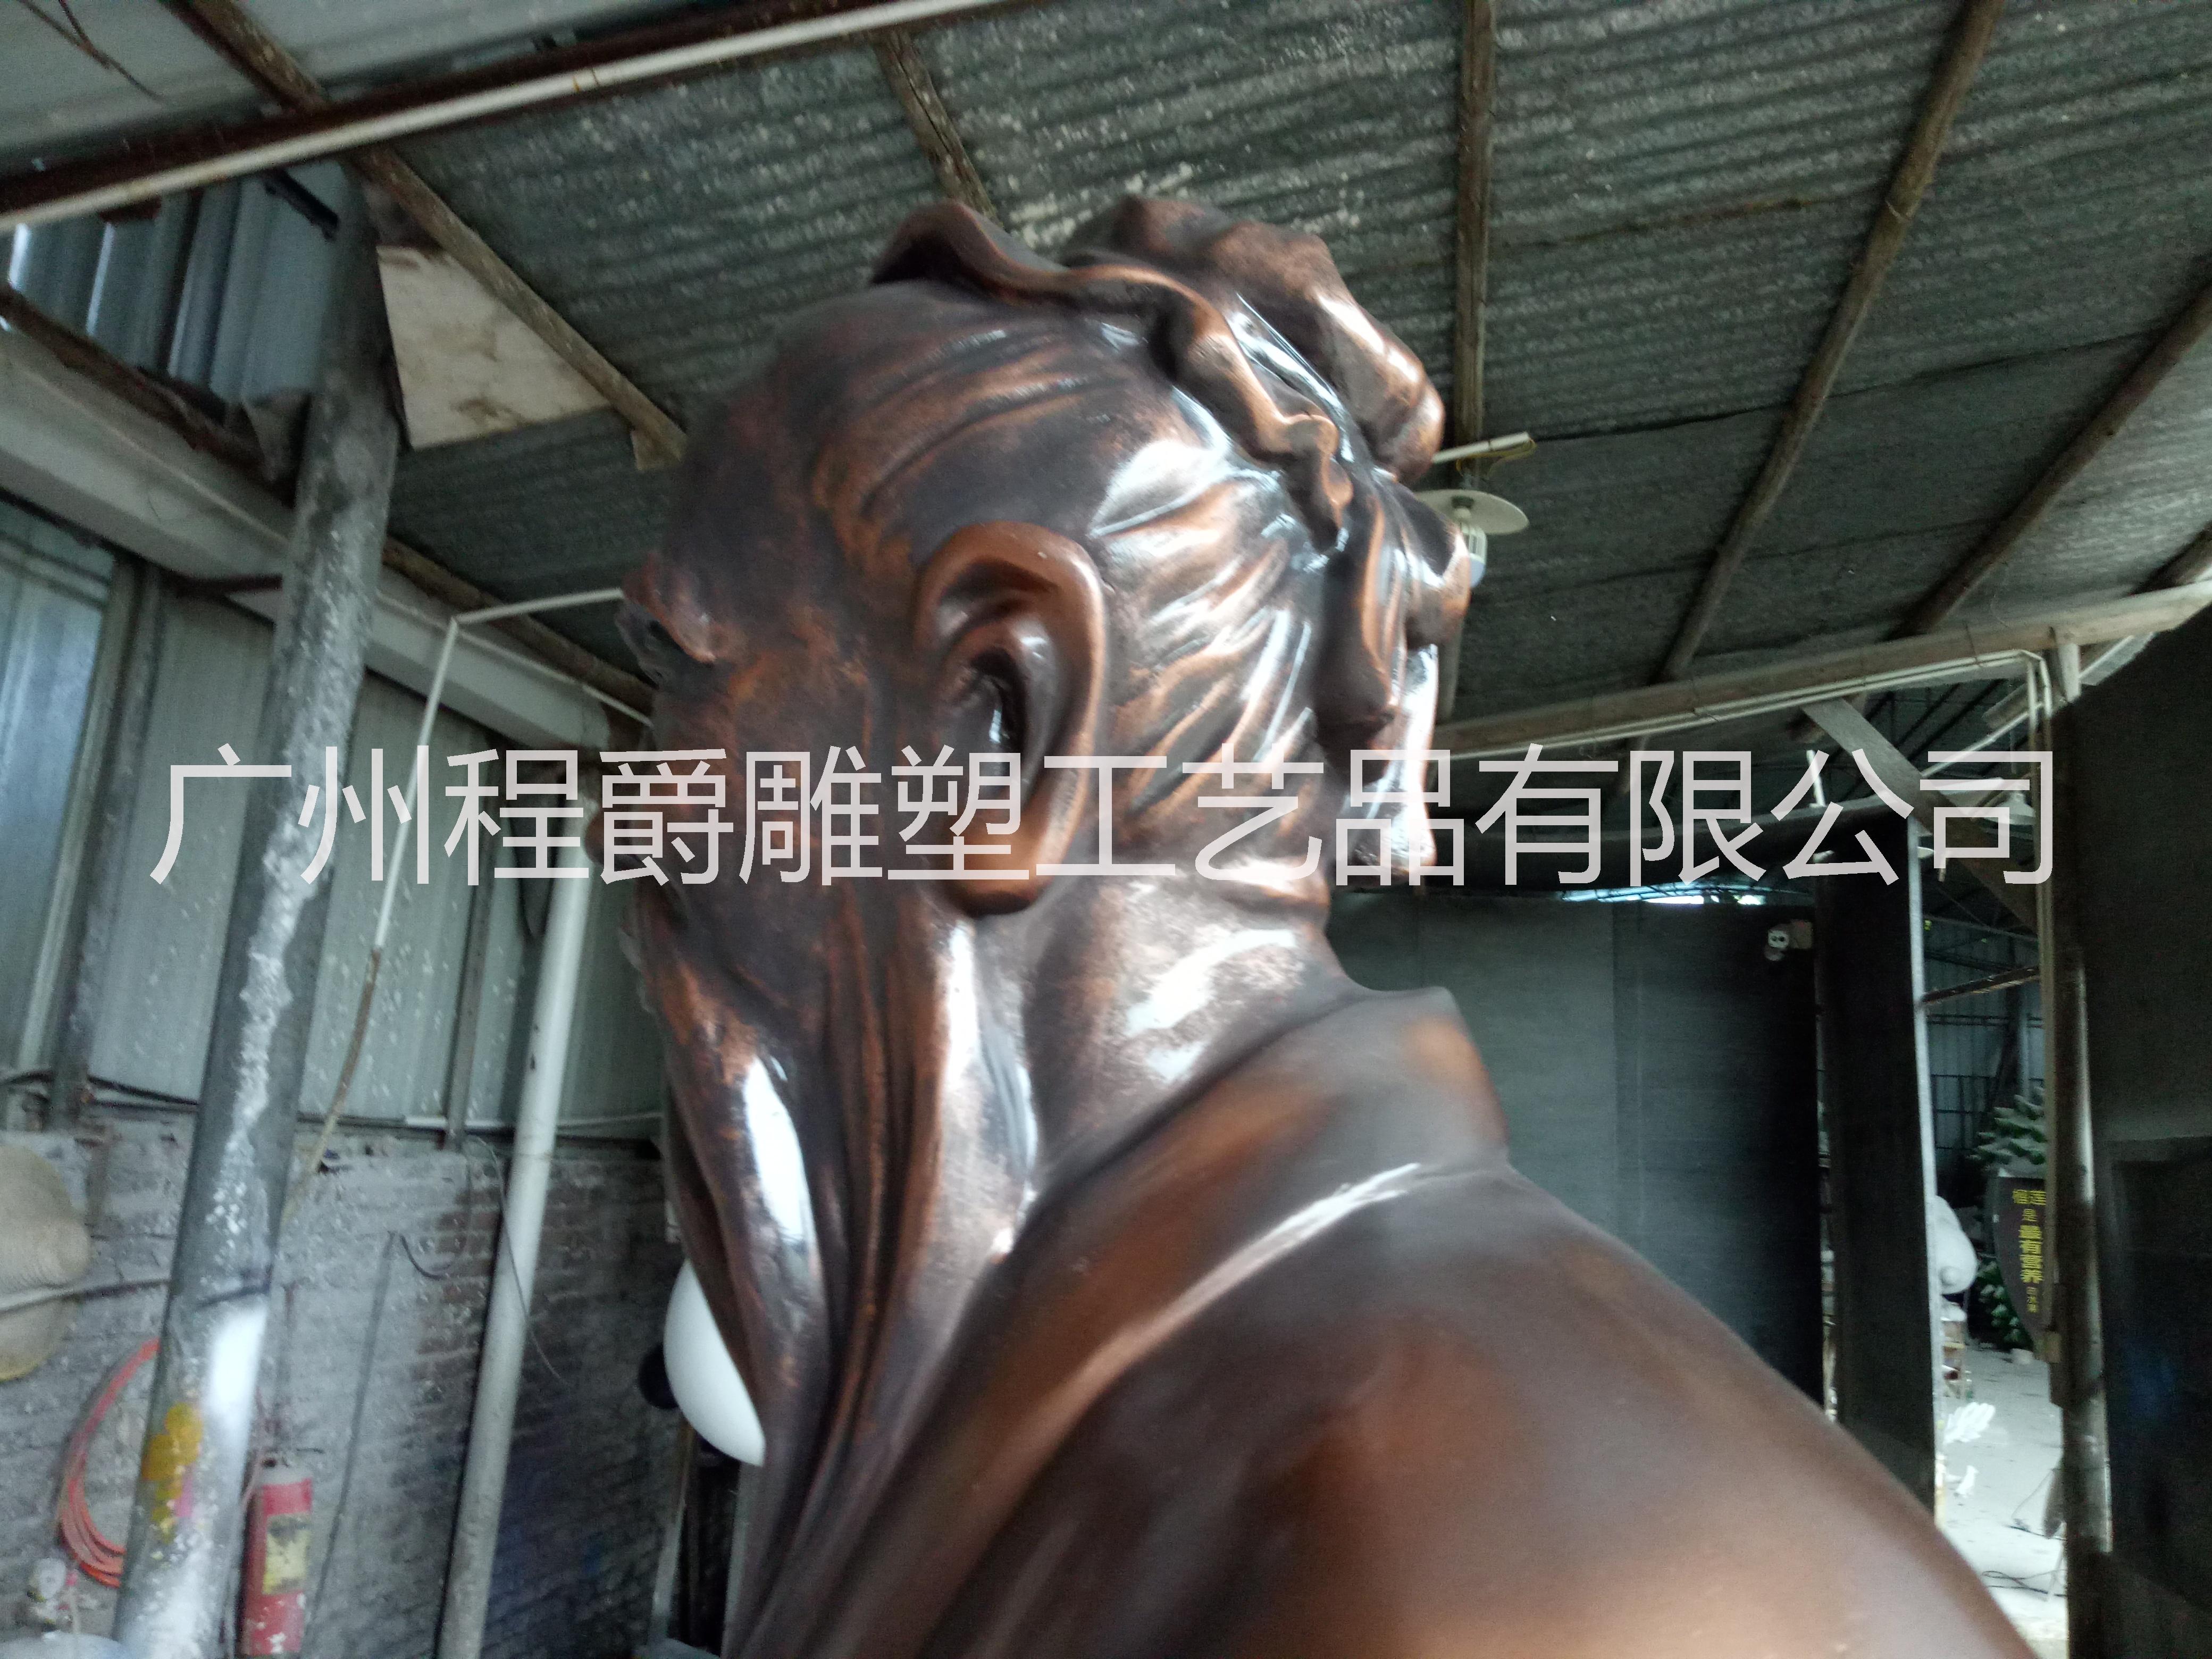 广州市玻璃钢人物雕塑厂家厂家专业定做玻璃钢仿铜孔子人物雕塑校园广场景观雕塑文化展示装饰摆件 玻璃钢人物雕塑